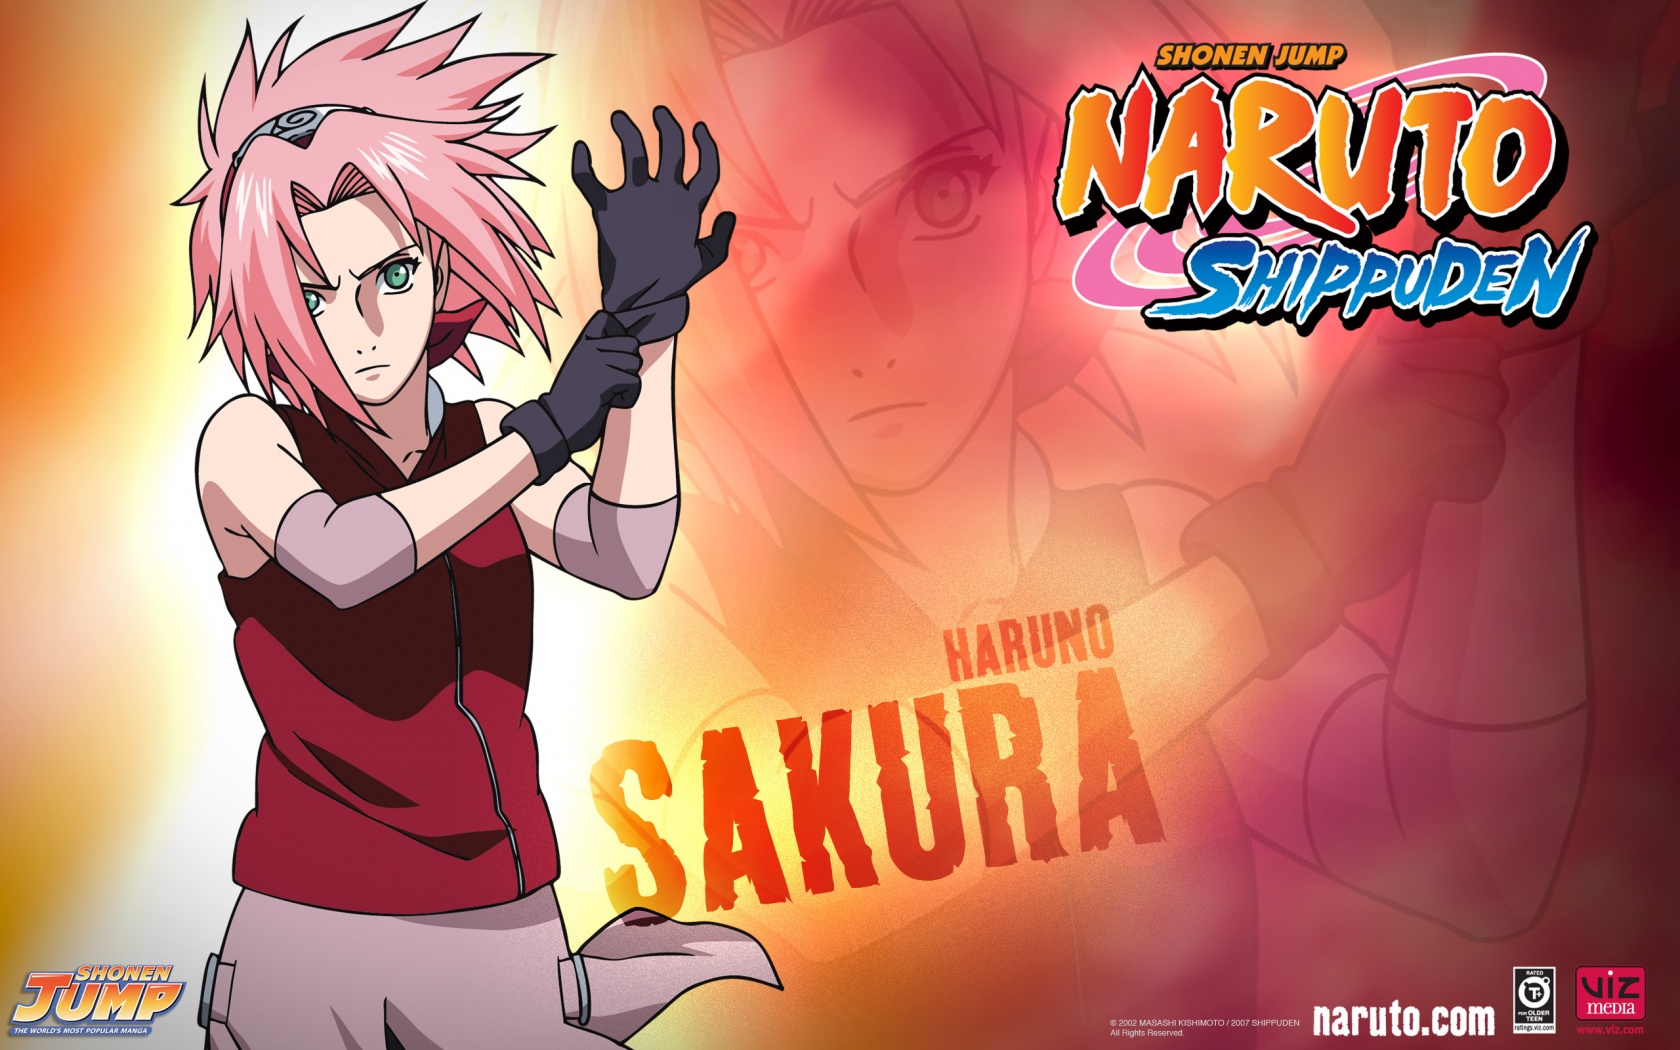 Naruto Shippuuden Image Sakura HD Wallpaper And Background Photos